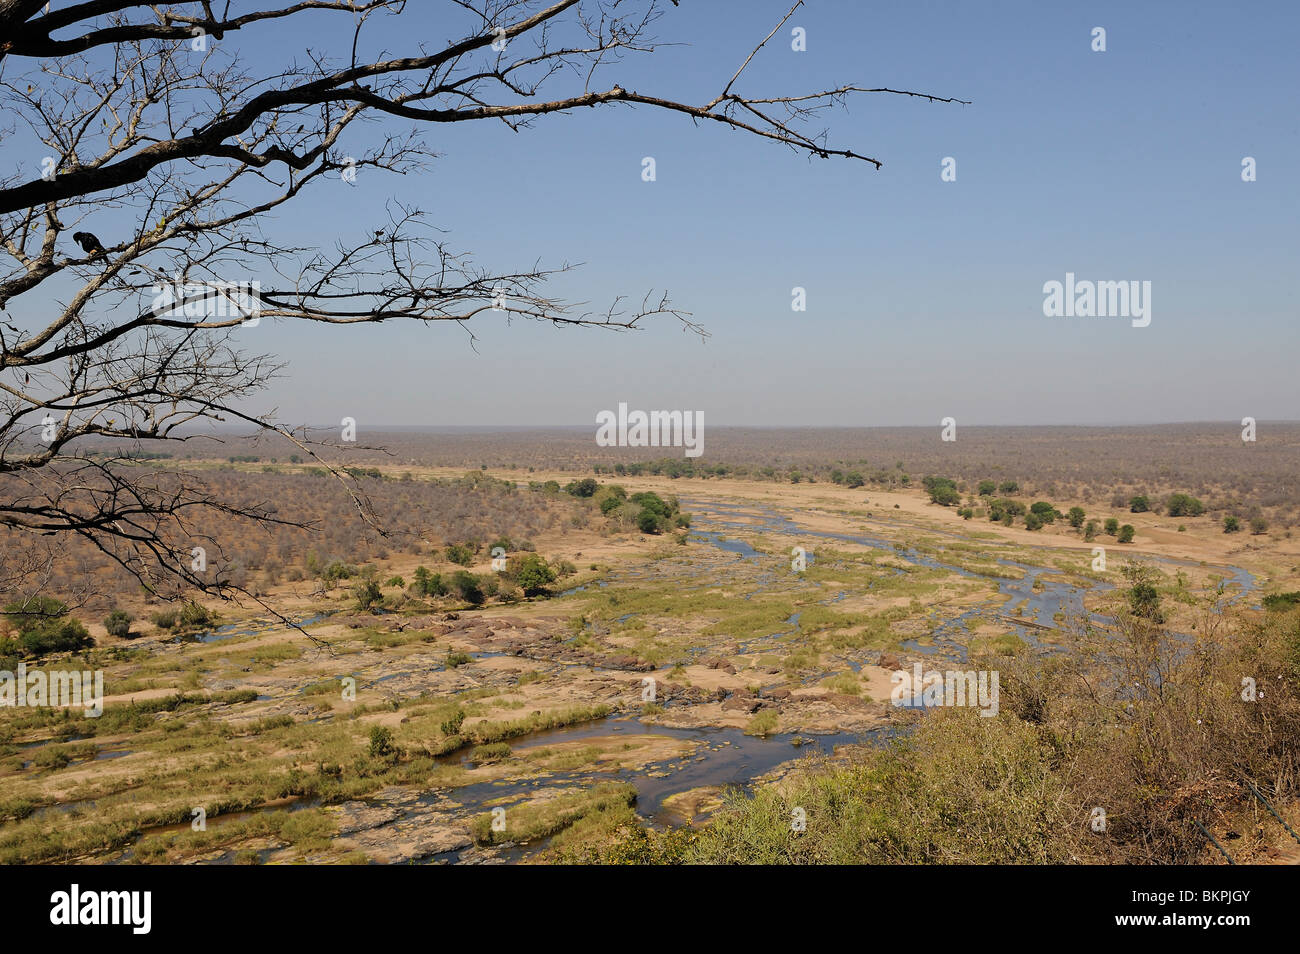 El Afrikaans rivierenlandschap, paisaje de río africano Foto de stock